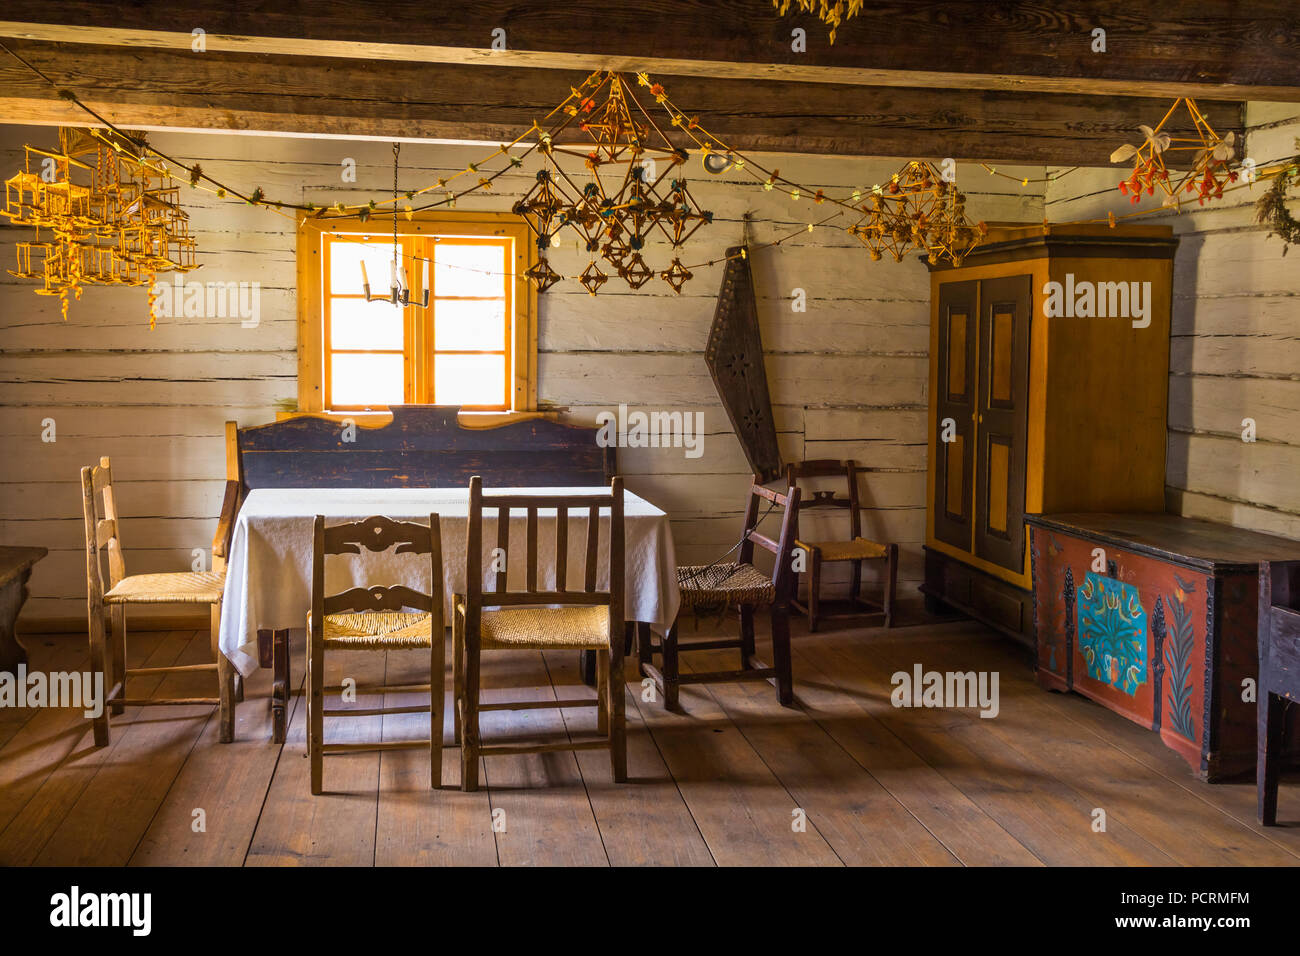 Llaves de cabinas, habitaciones y armarios colgados en el armario de pared  Fotografía de stock - Alamy